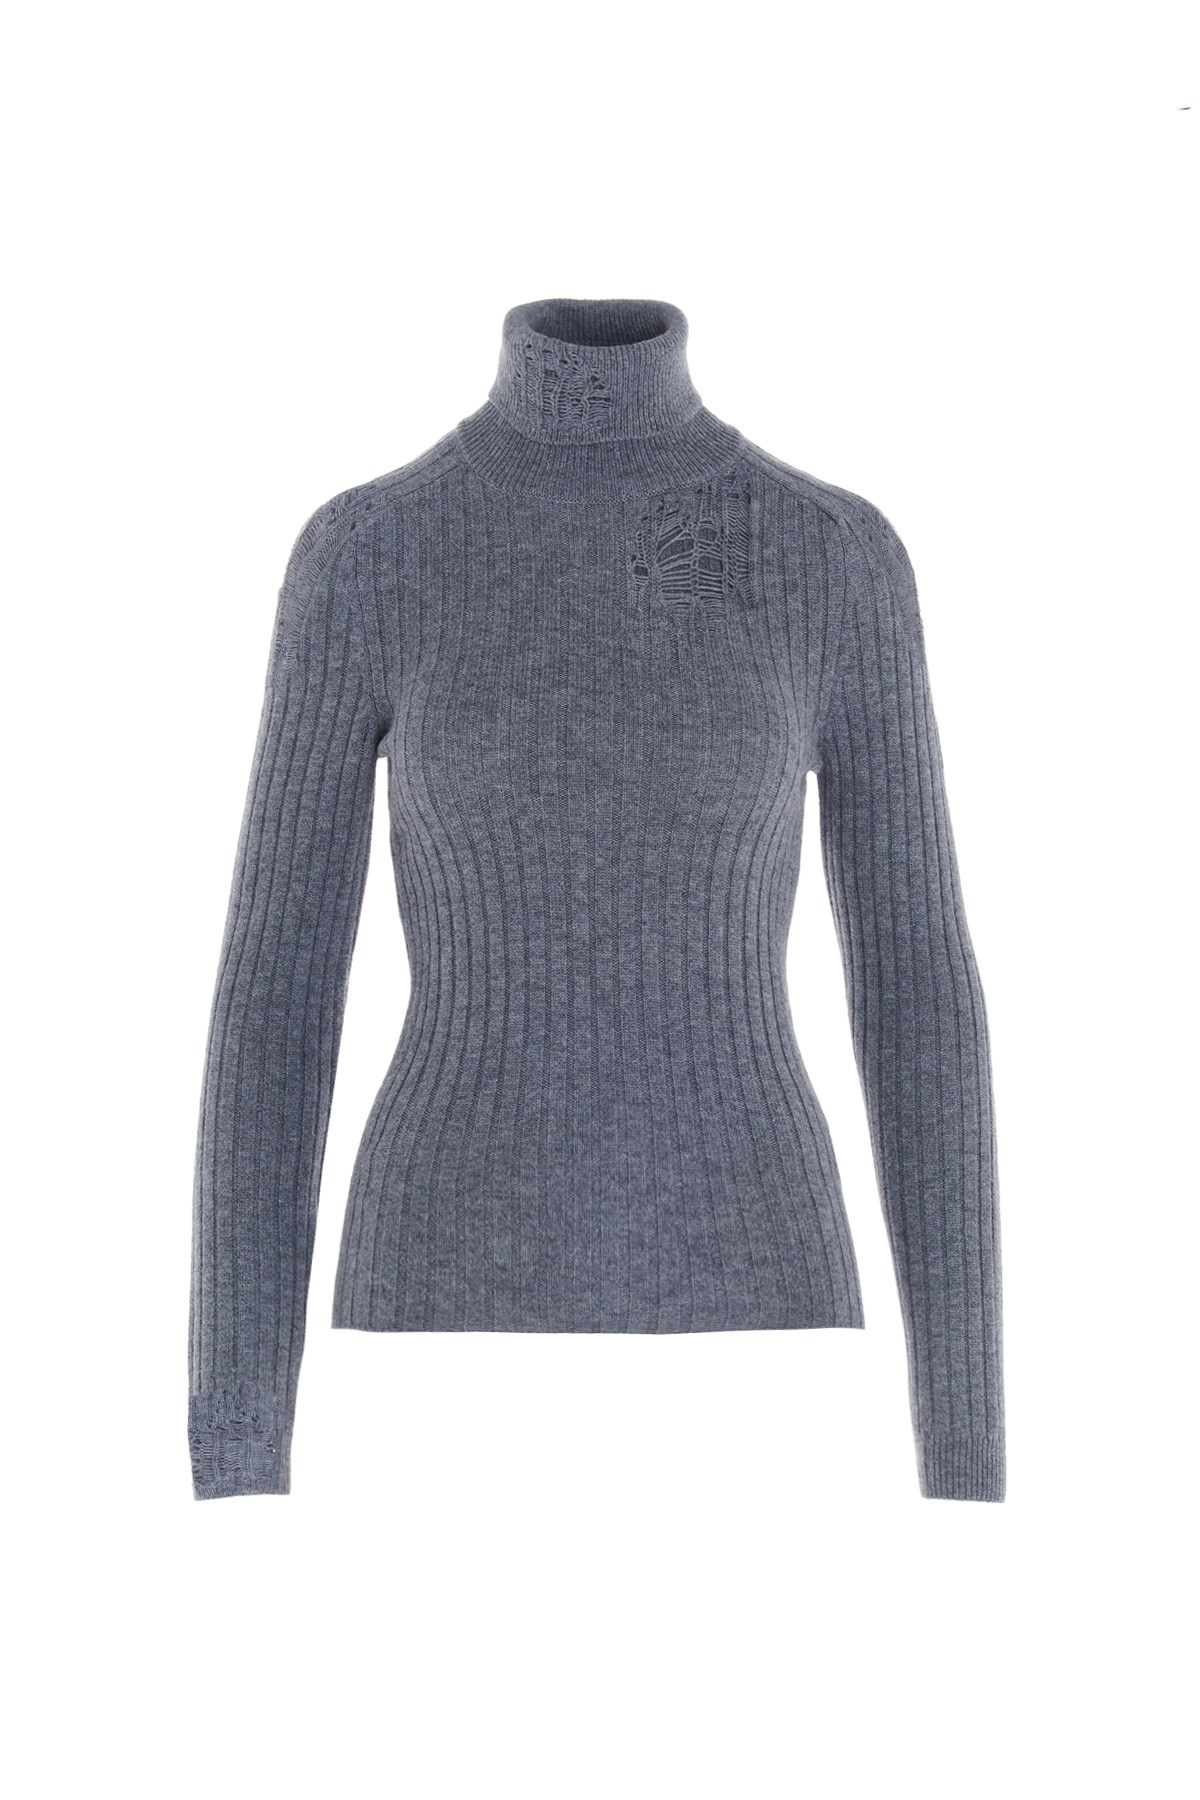 14950円 激安超特価 21ss The open product wool sweater